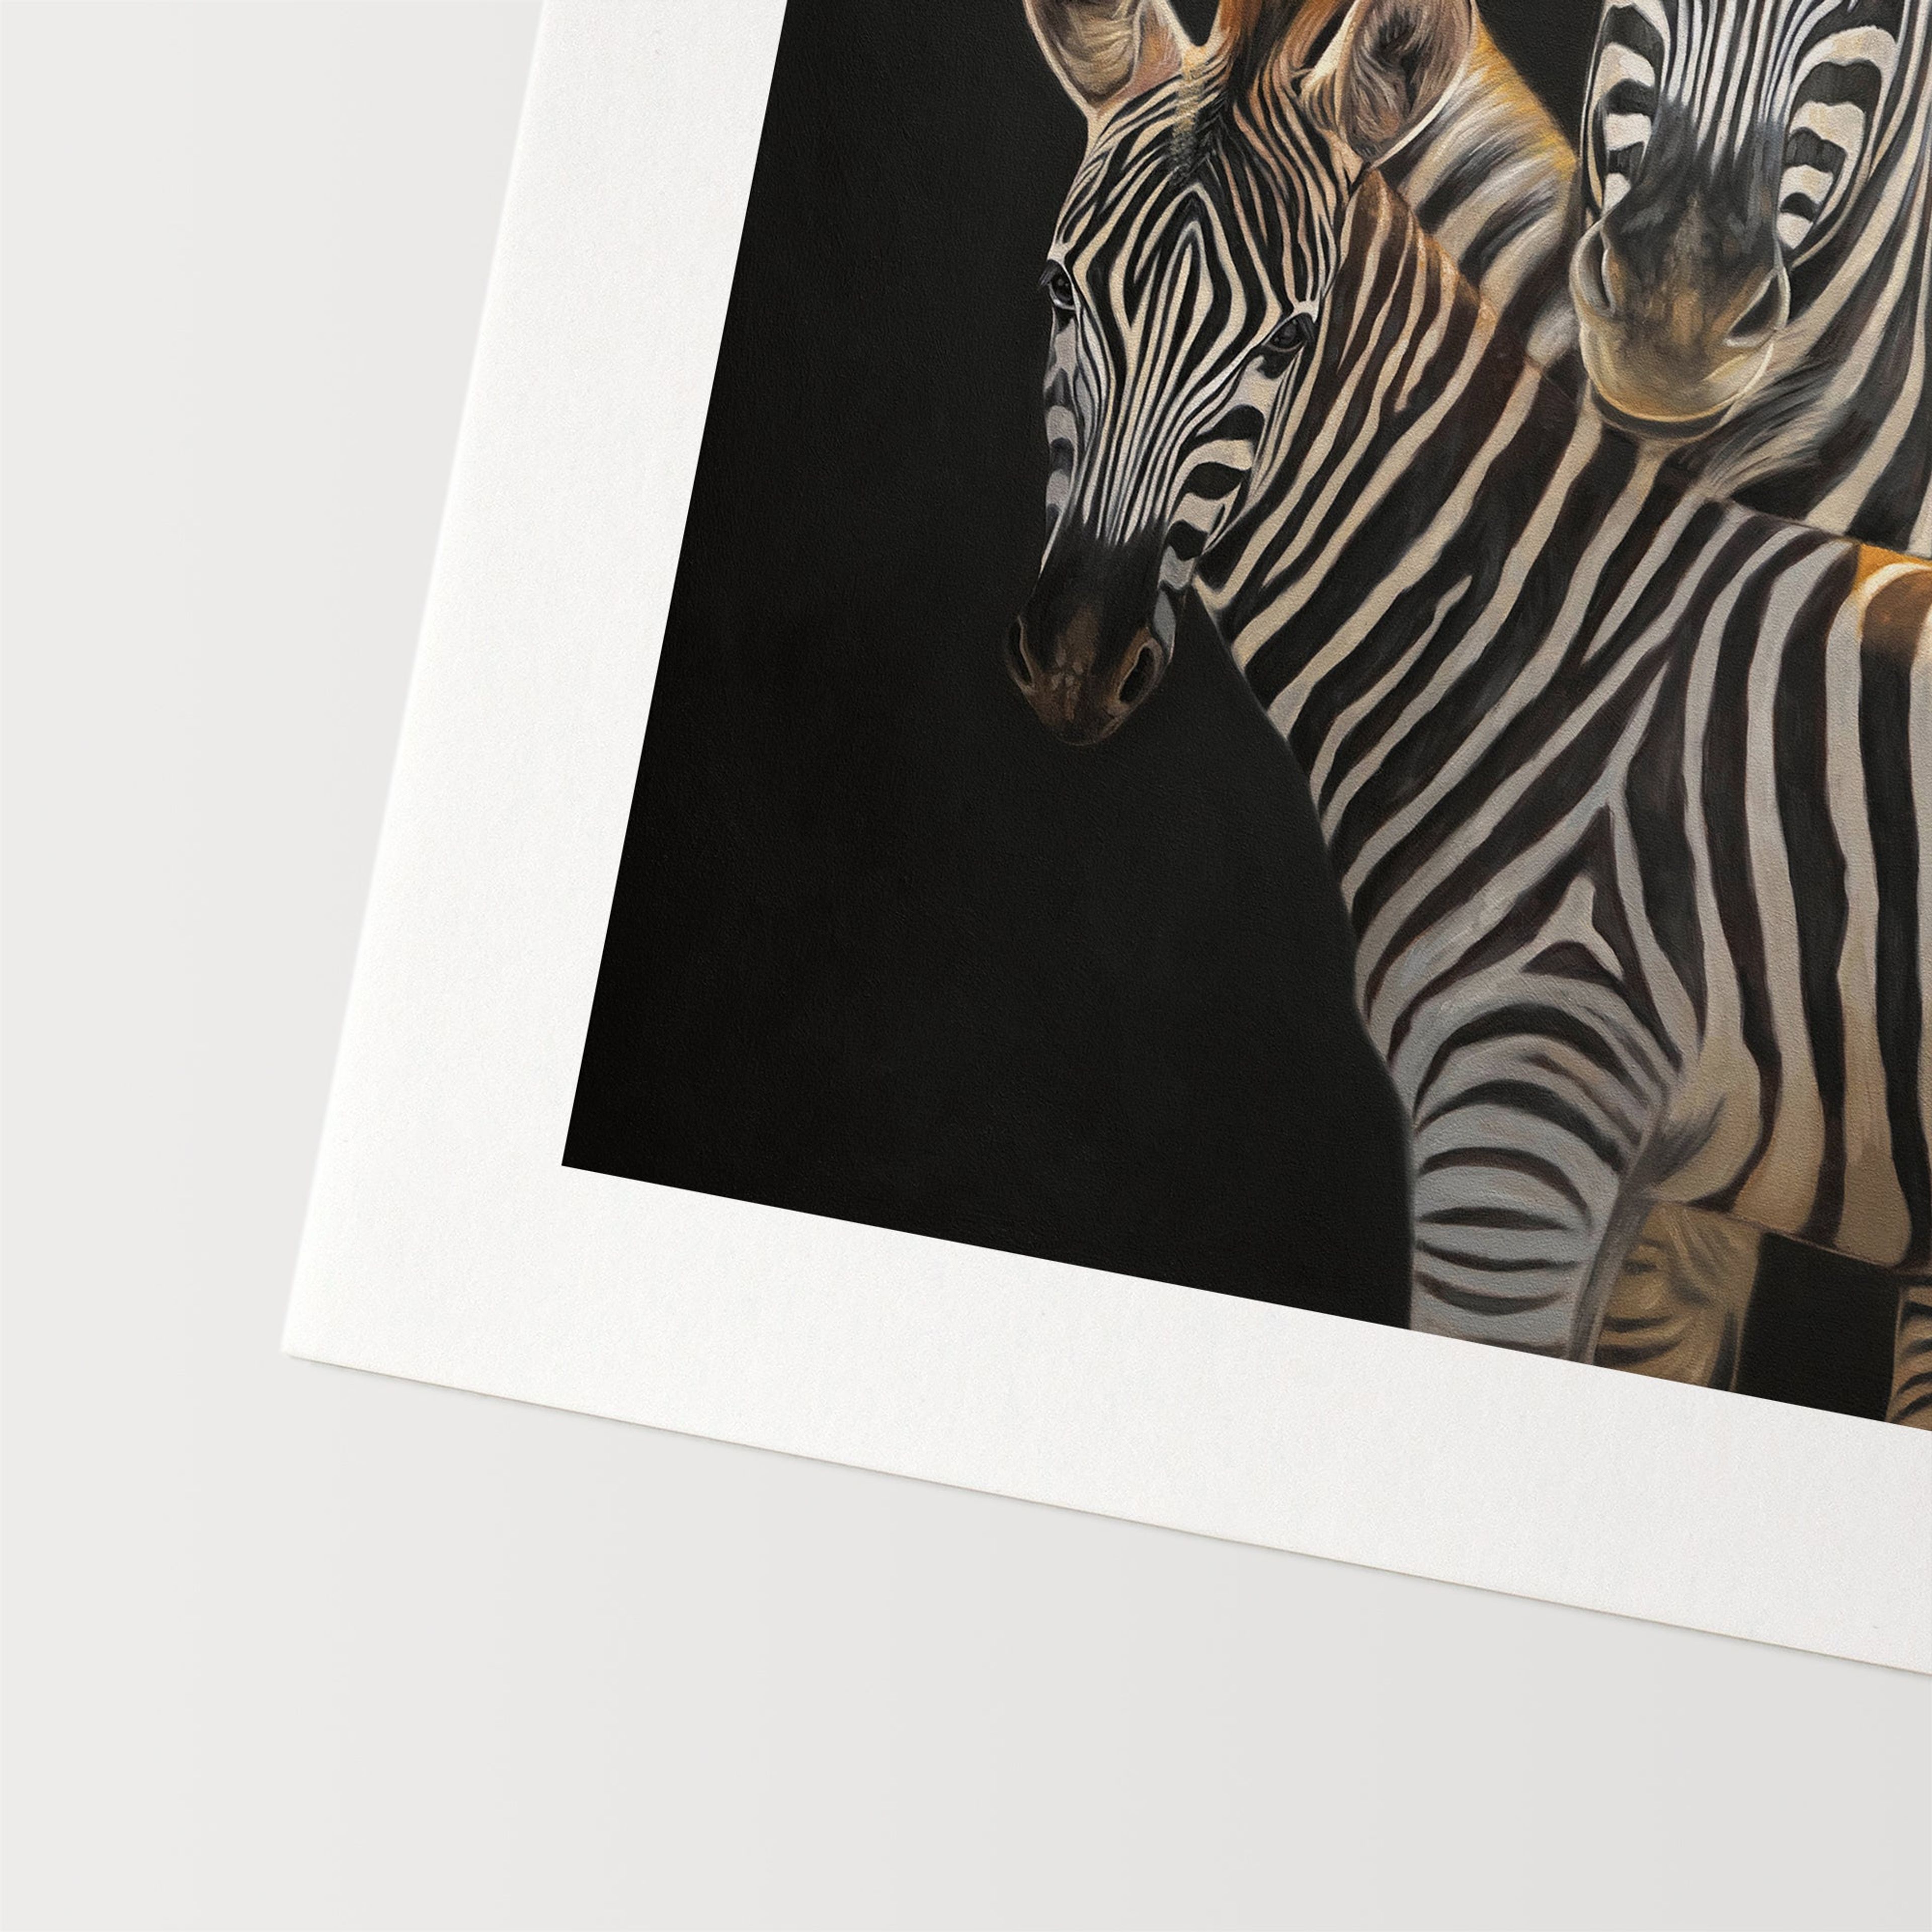 Mother & Foal Zebras | Fine Art Print